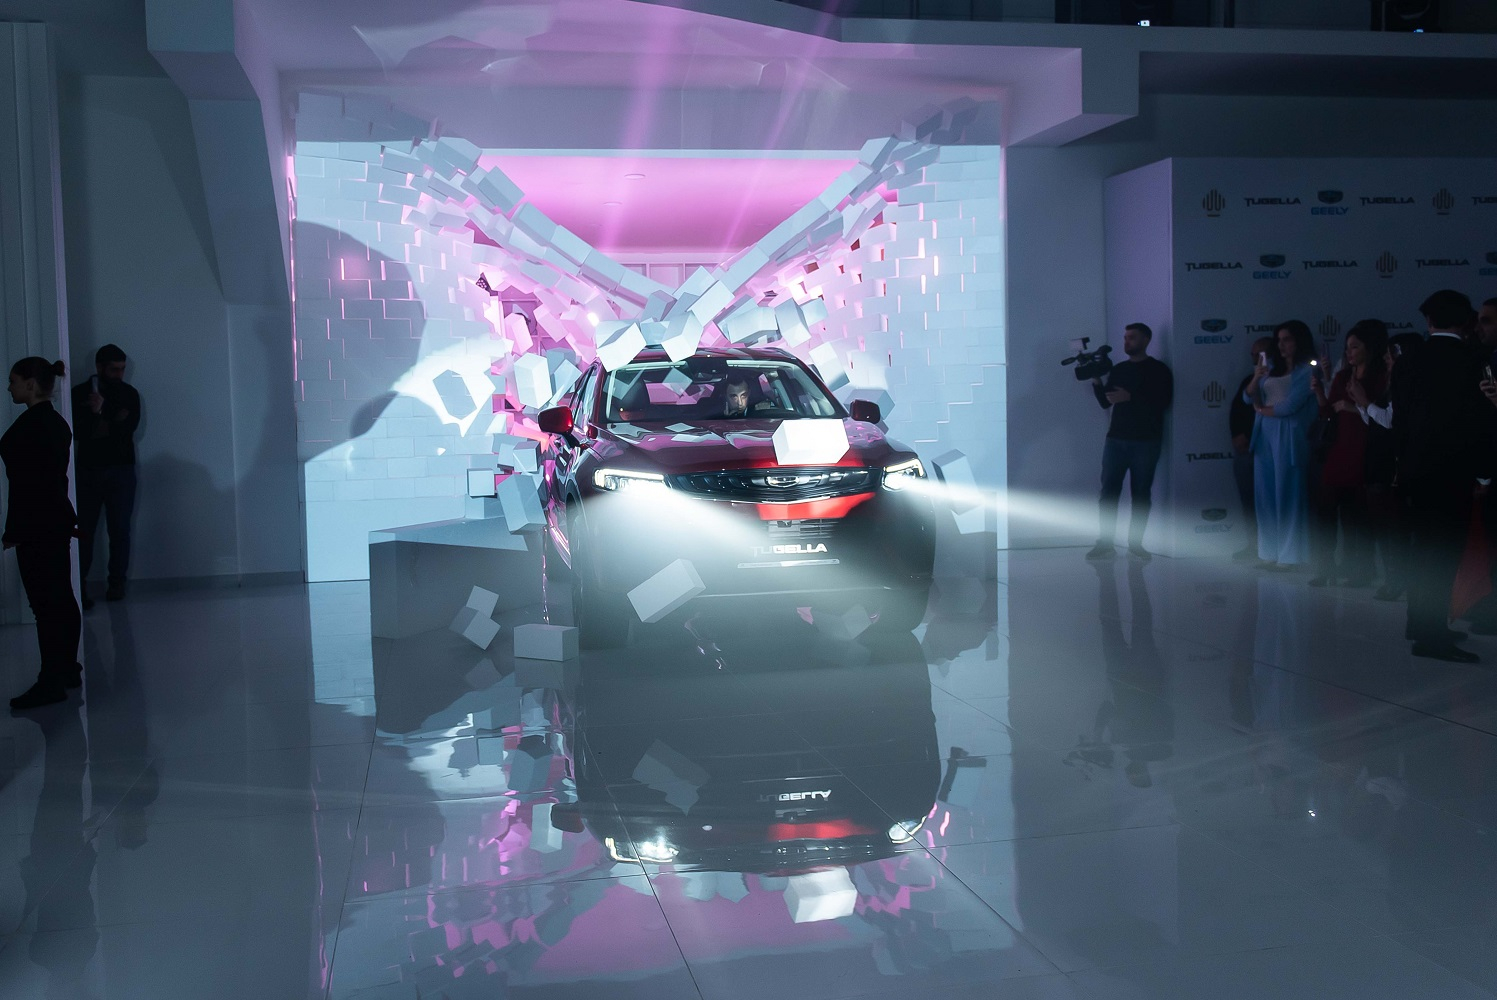 2021-ci ilin ən çox gözlənilən avtomobilinin təqdimatı keçirildi - FOTO/VİDEO